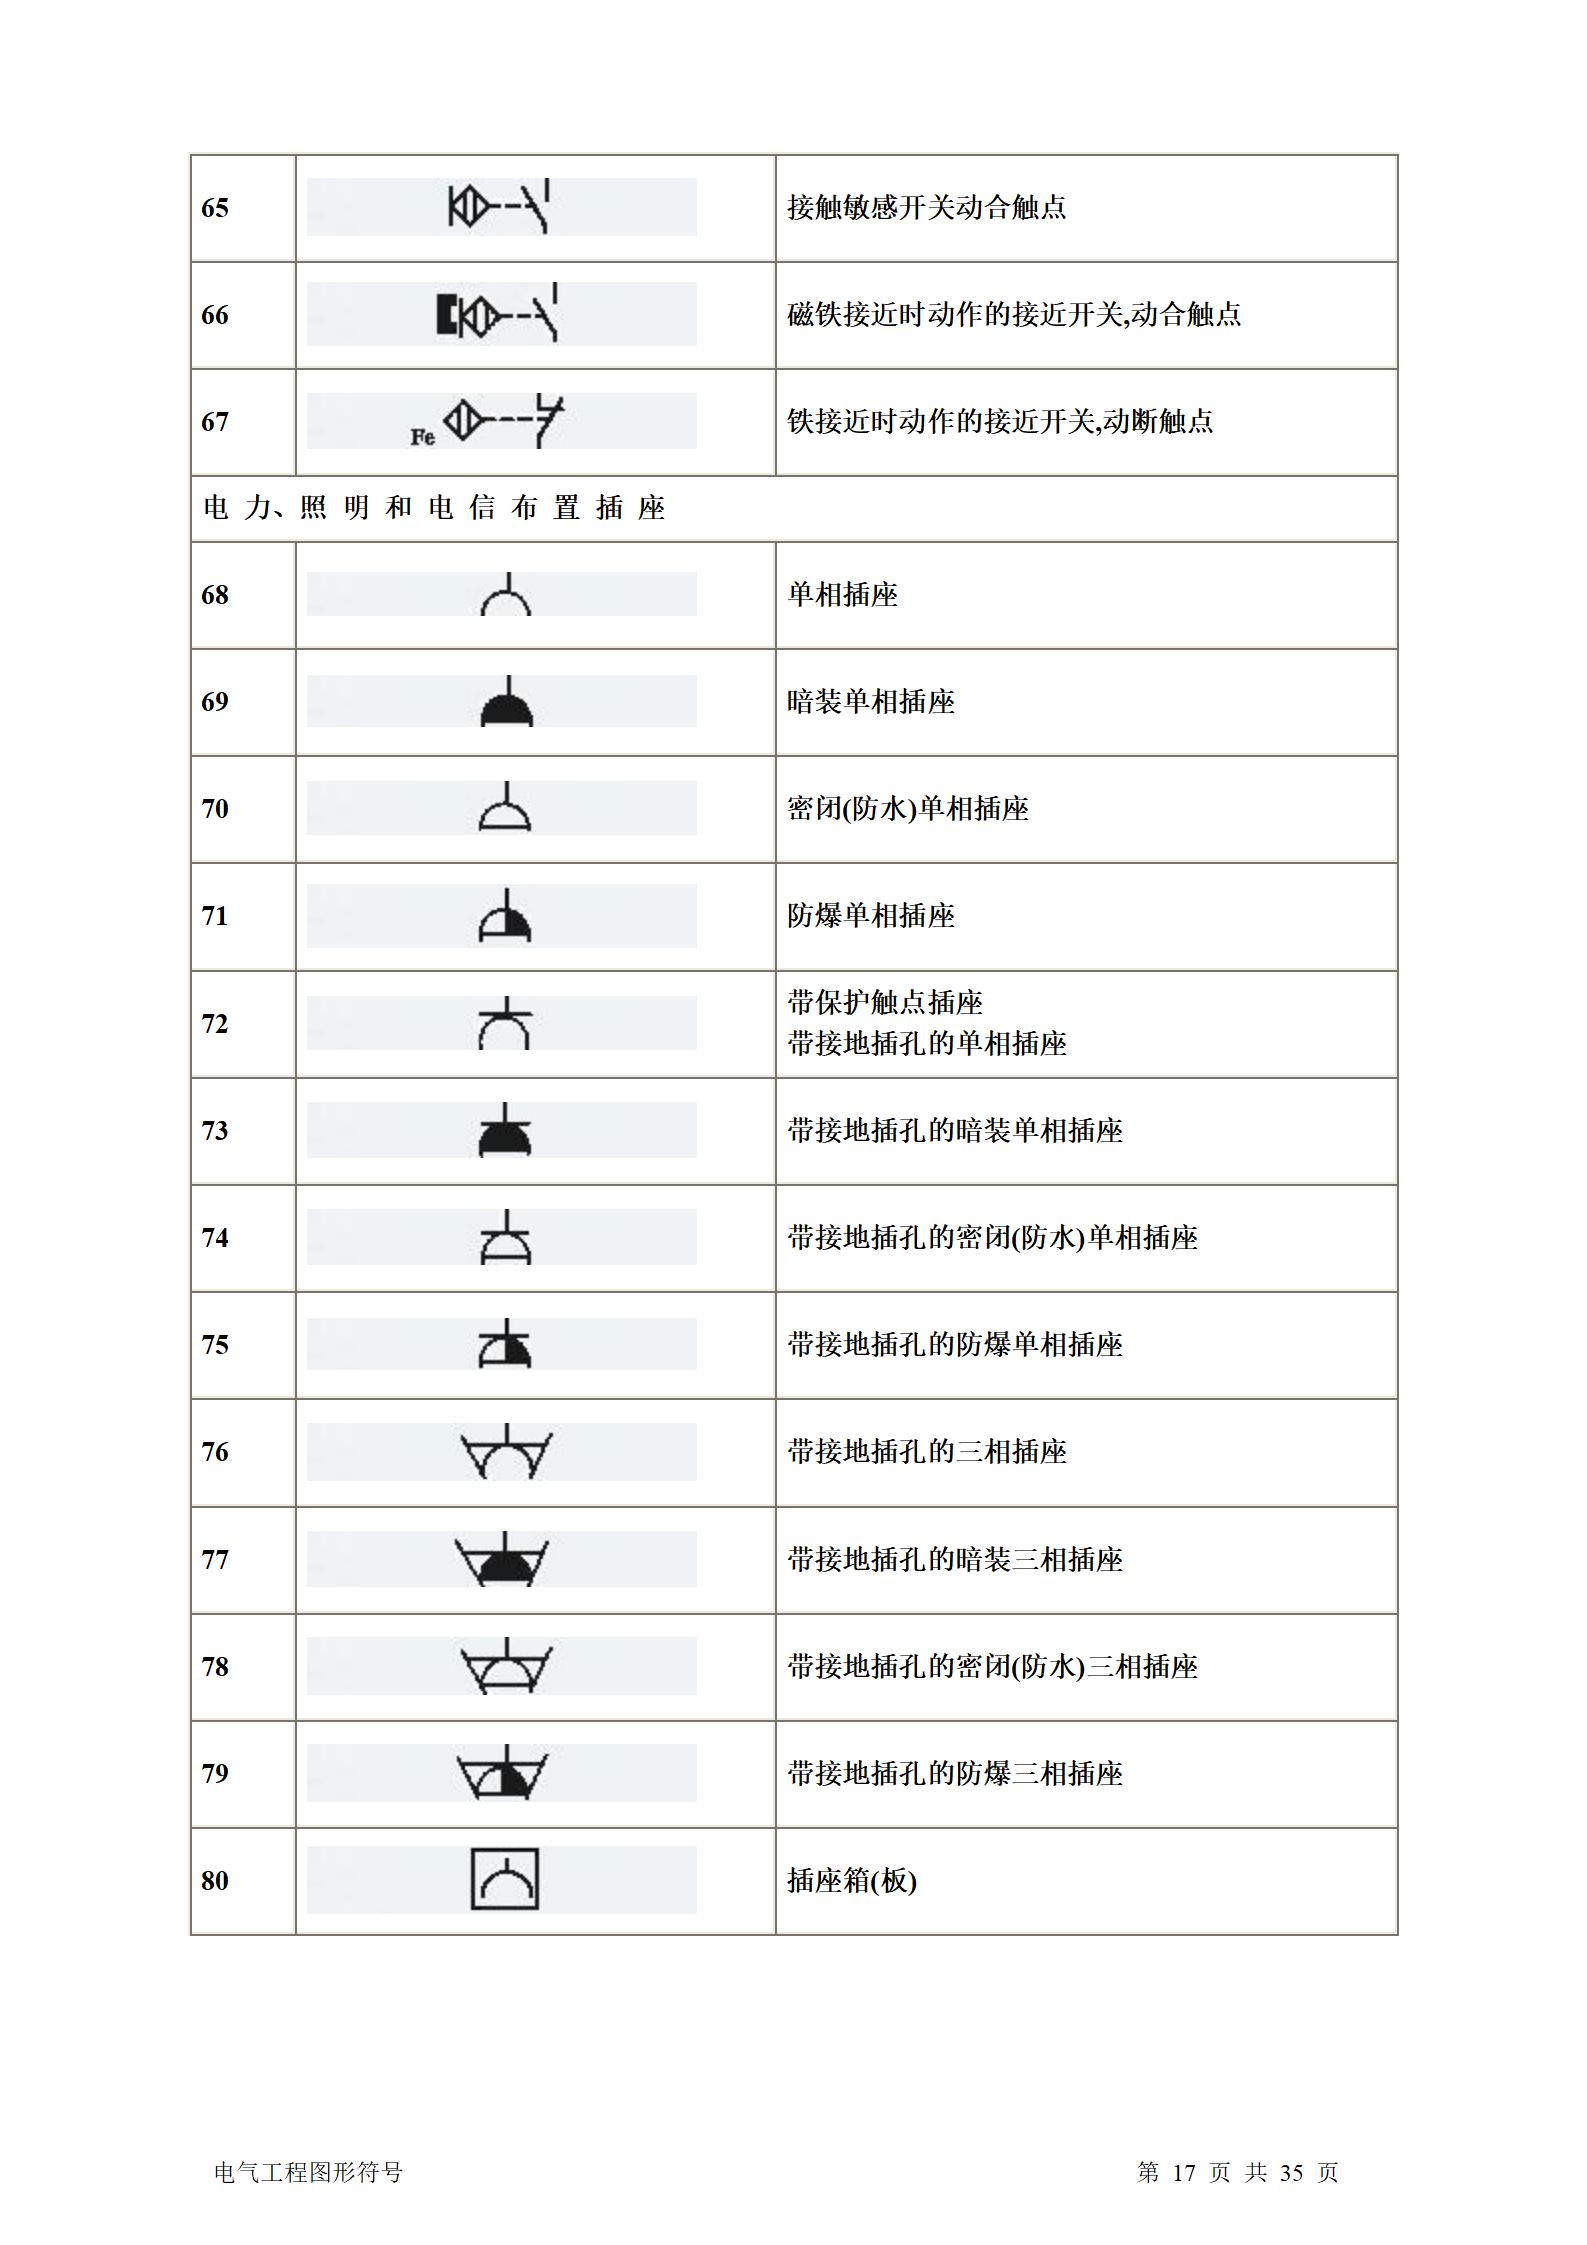 建筑电气、水暖、通风工程图形符号大全word版插图(17)